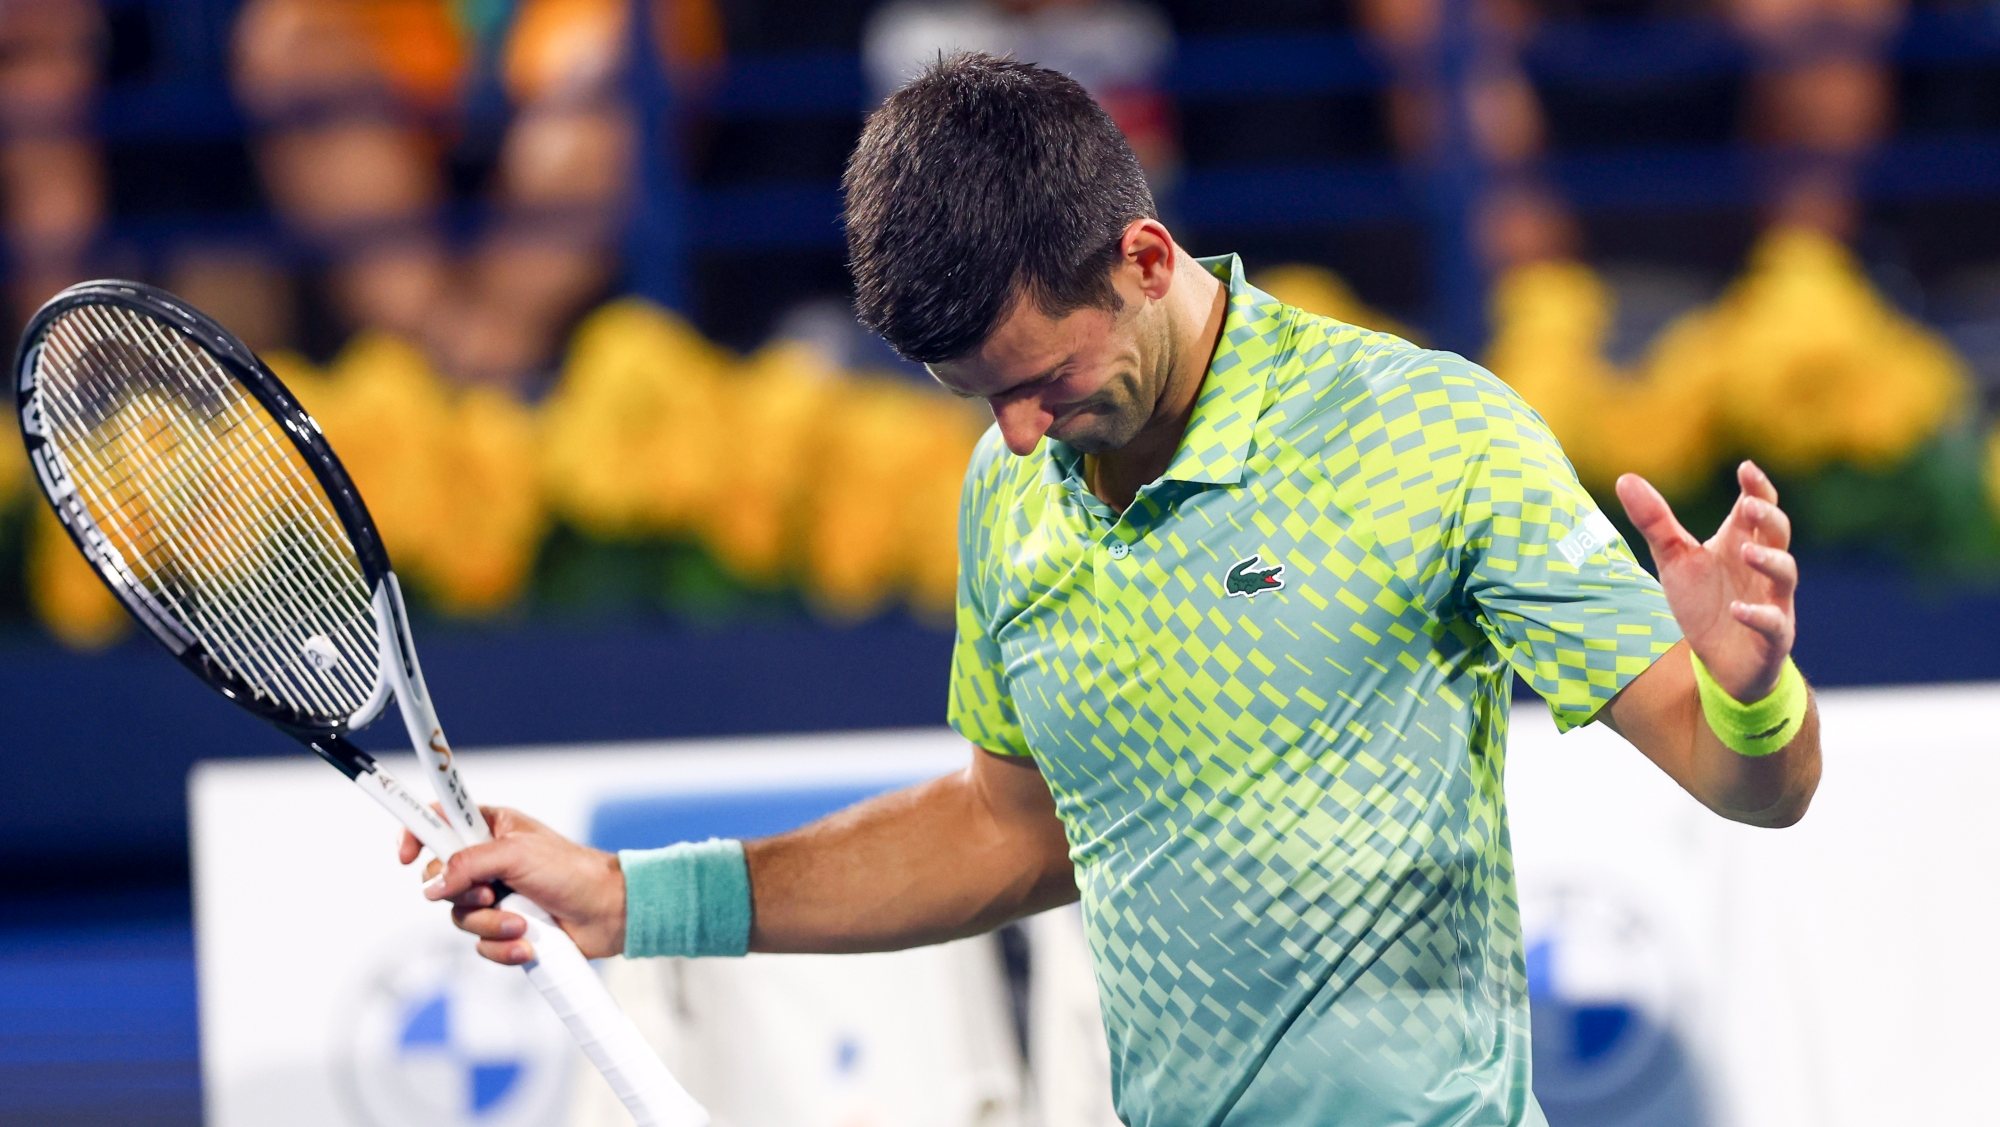 Novak Djokovic sofreu a primeira derrota do ano no Dubai, caindo nas meias-finais frente a Daniil Medvedev depois do triunfo no Open da Austrália